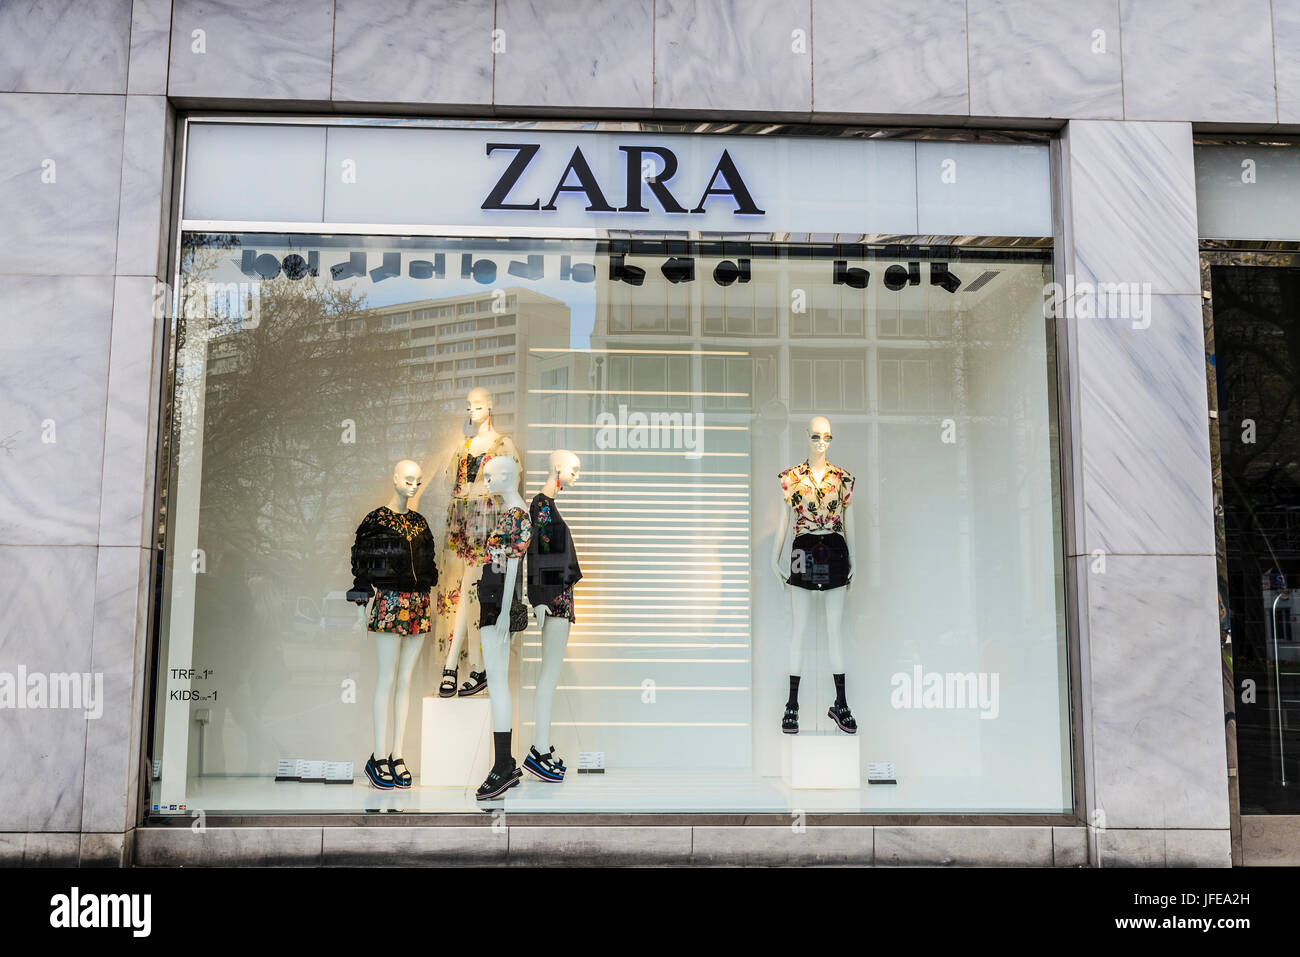 Zara clothing Banque de photographies et d'images à haute résolution - Page  4 - Alamy